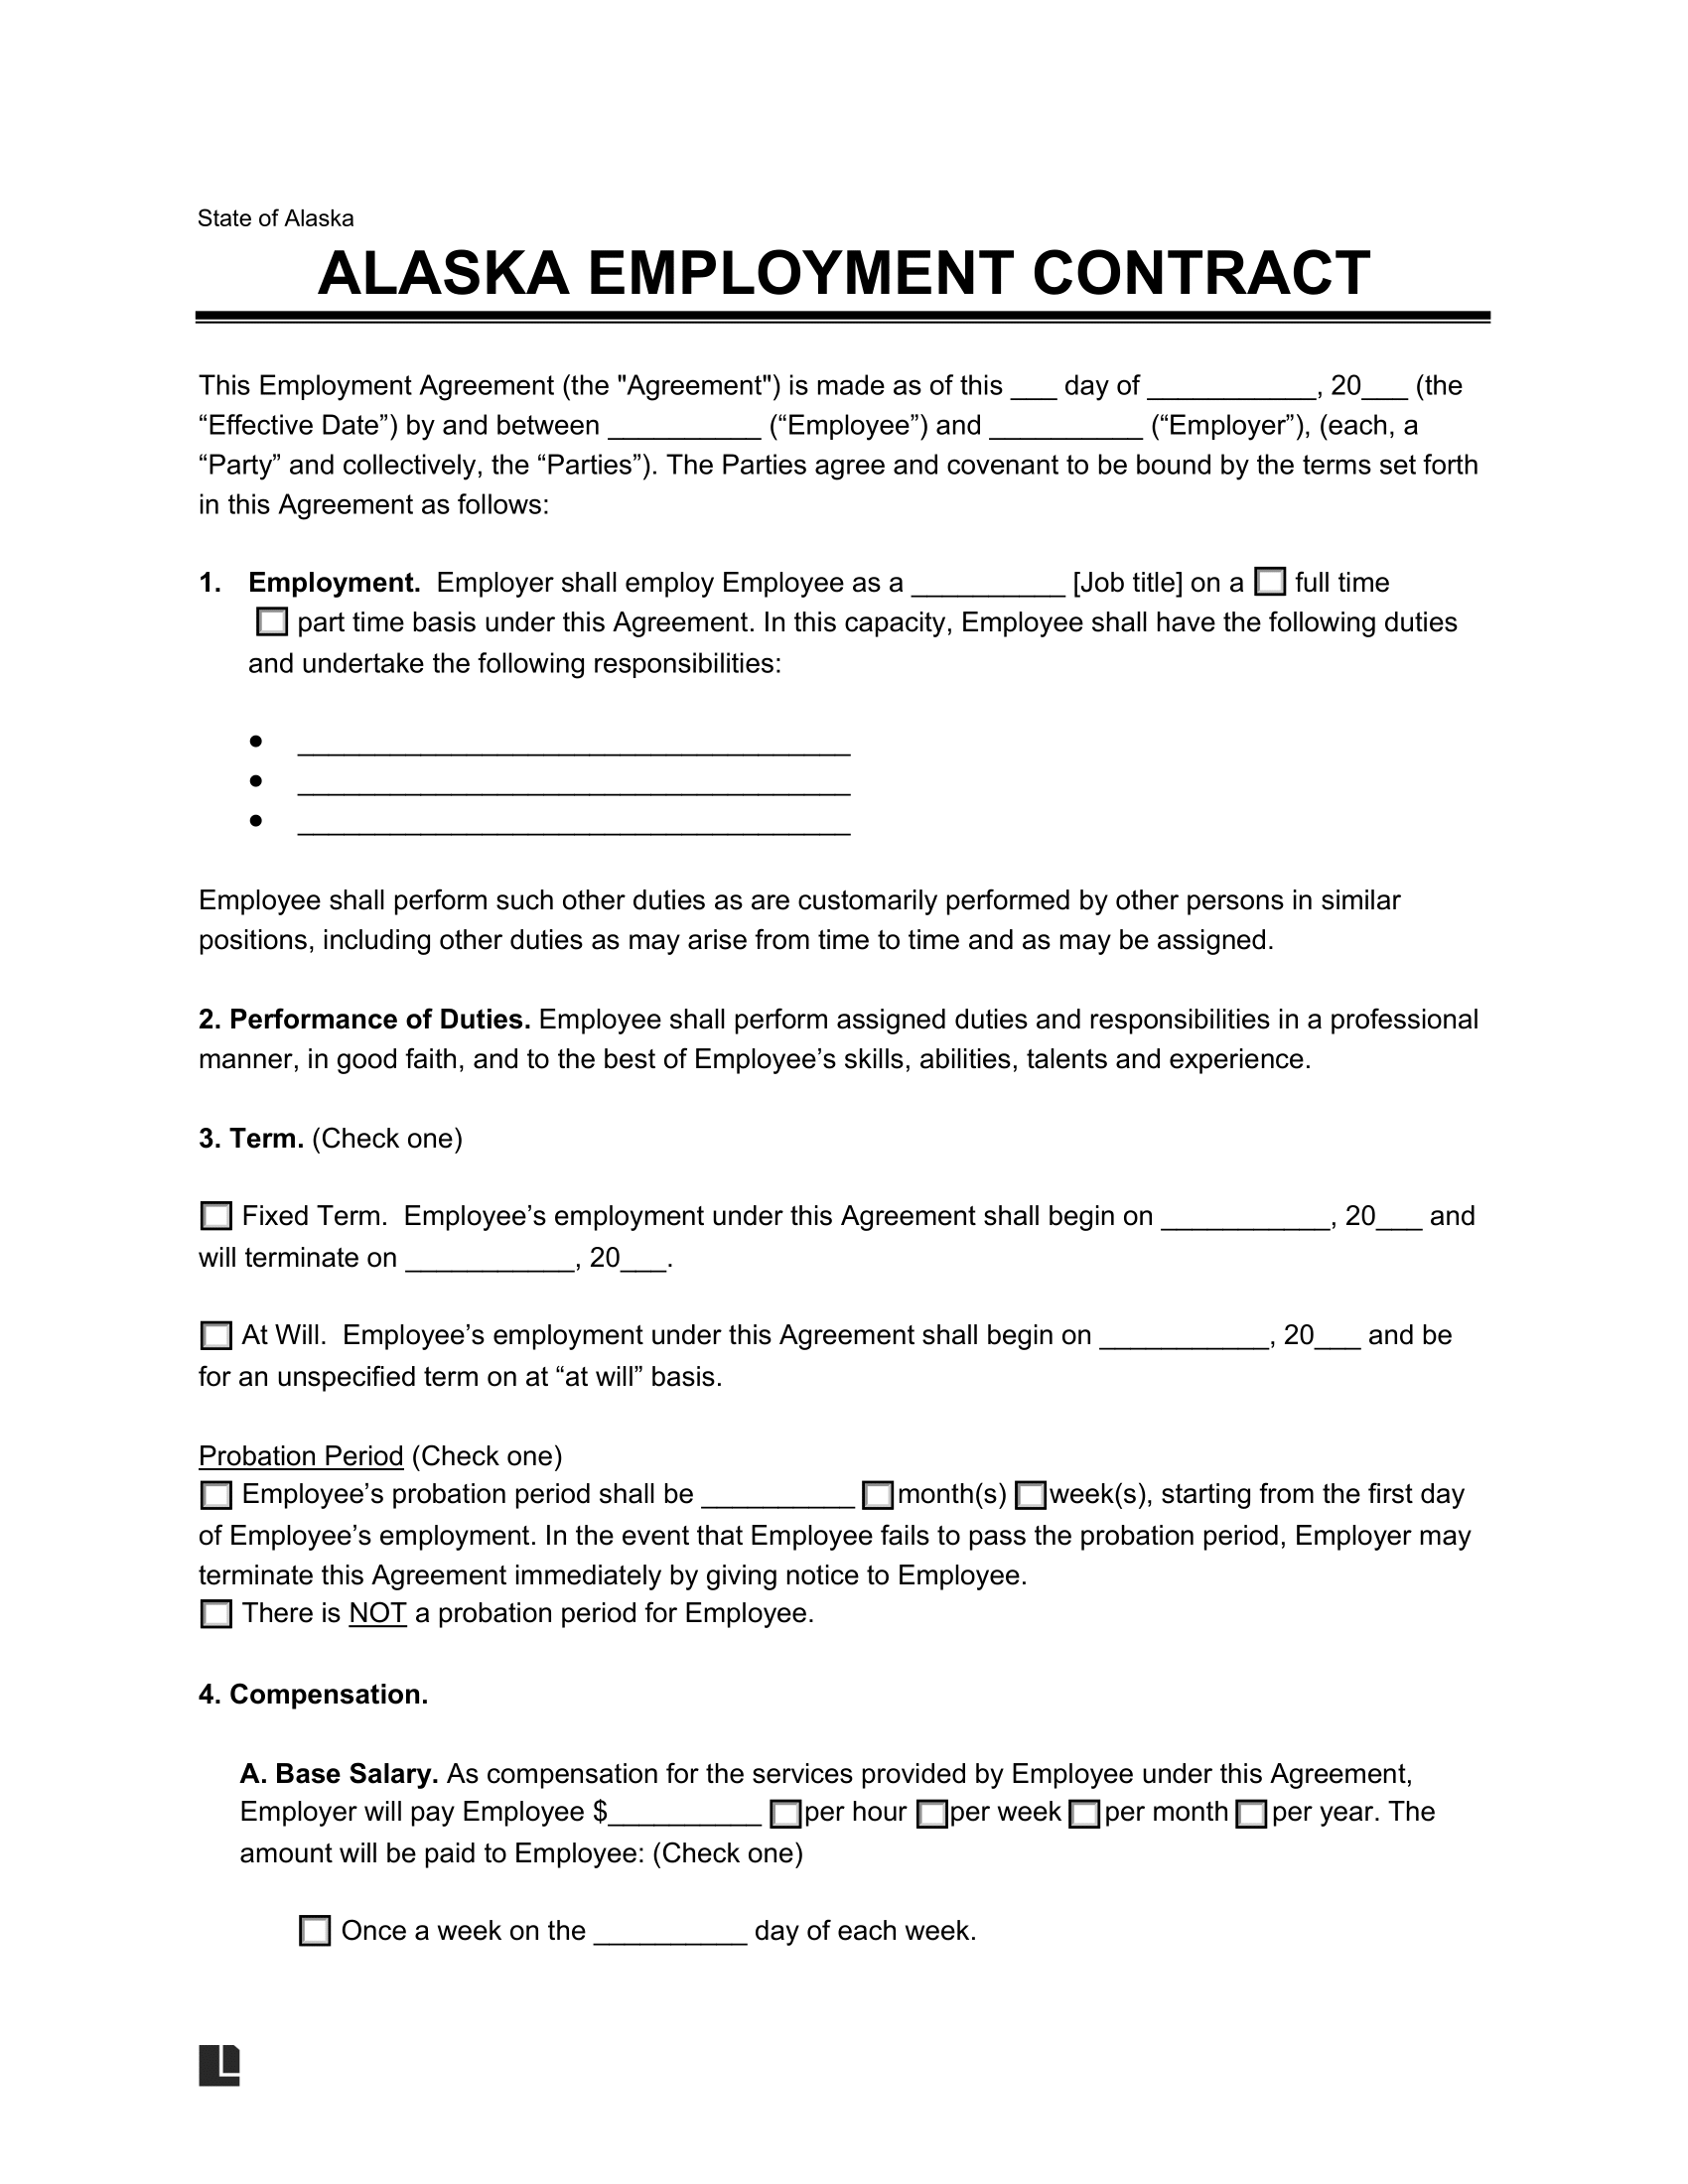 alaska employment contract template